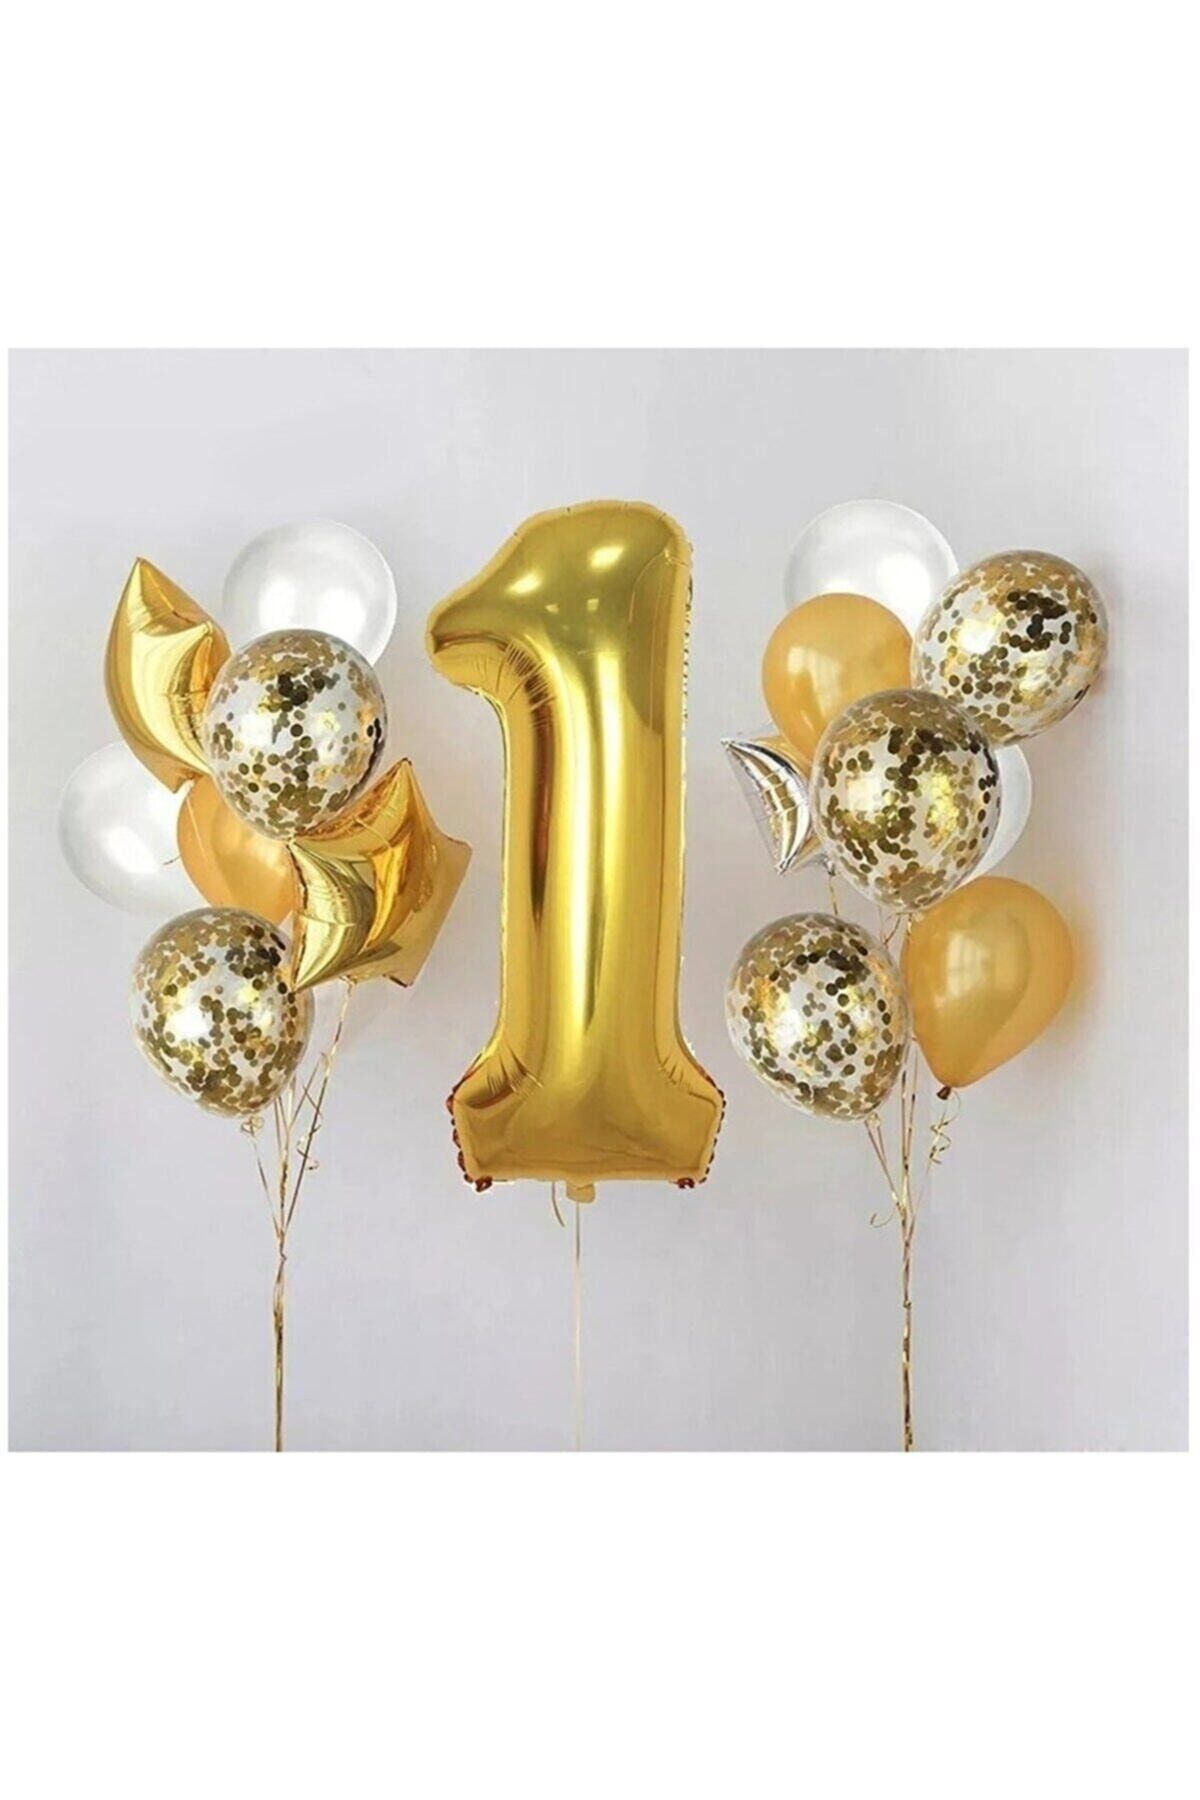 BİDOLUMUTLULUK 1 Yaş Gold Folyo Balon Şeffaf Balon Seti Doğum Günü Parti Seti